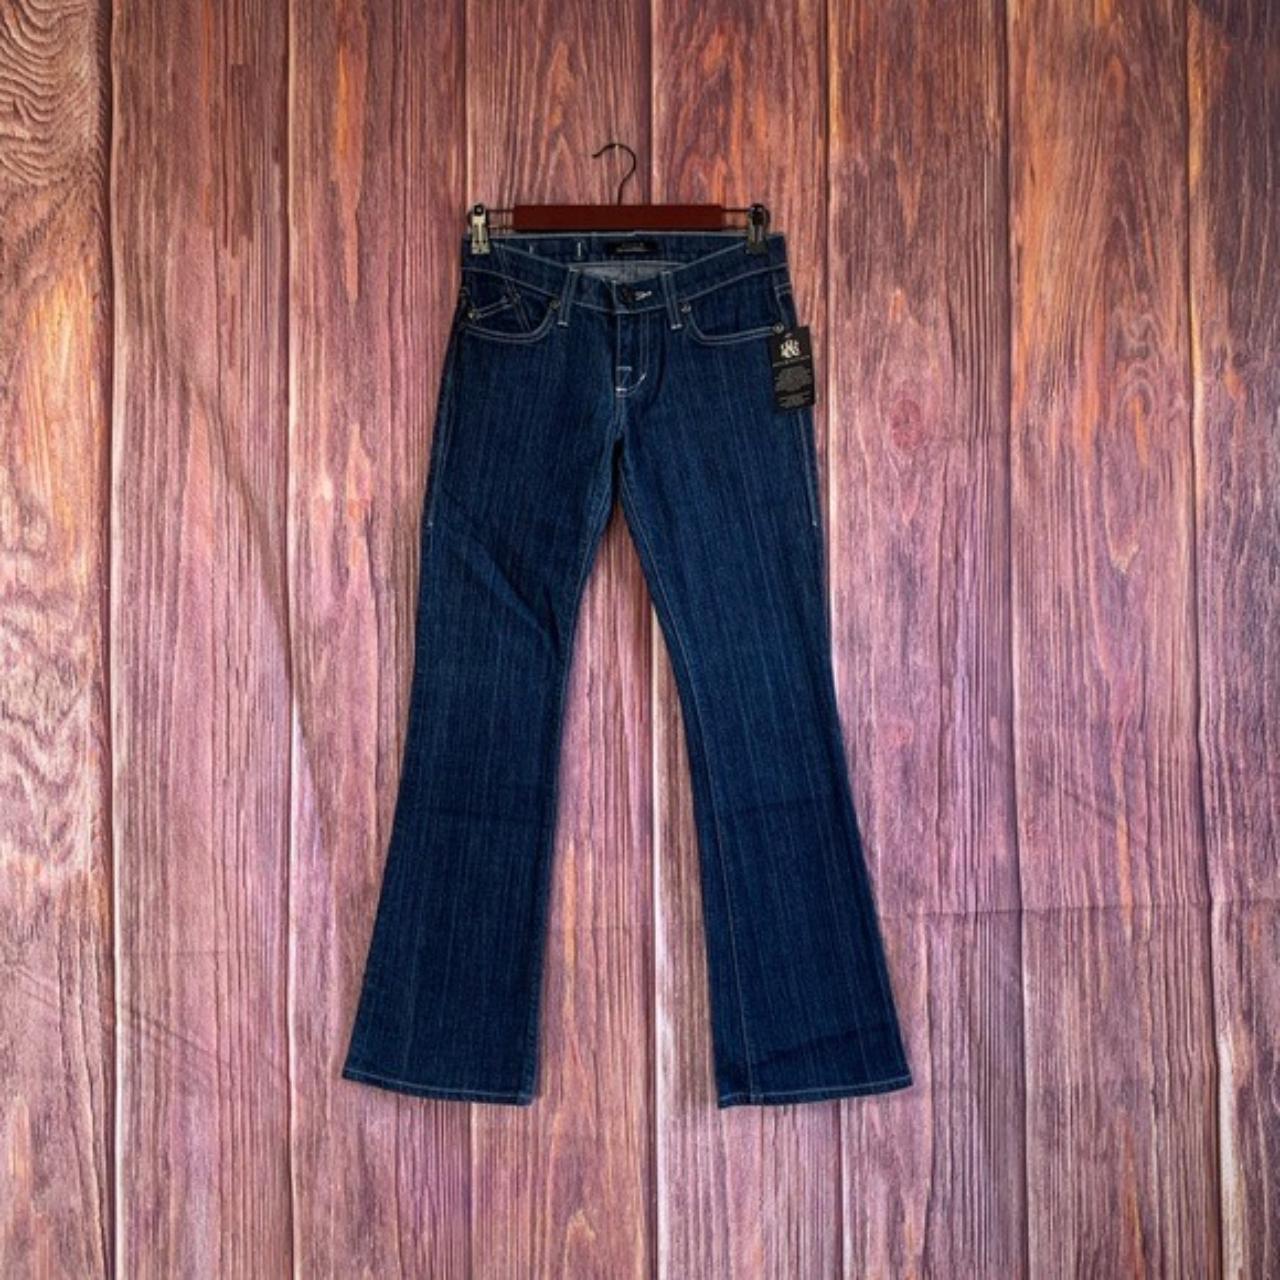 New. Rock & Republic Cassandra jeans. Women's size... - Depop